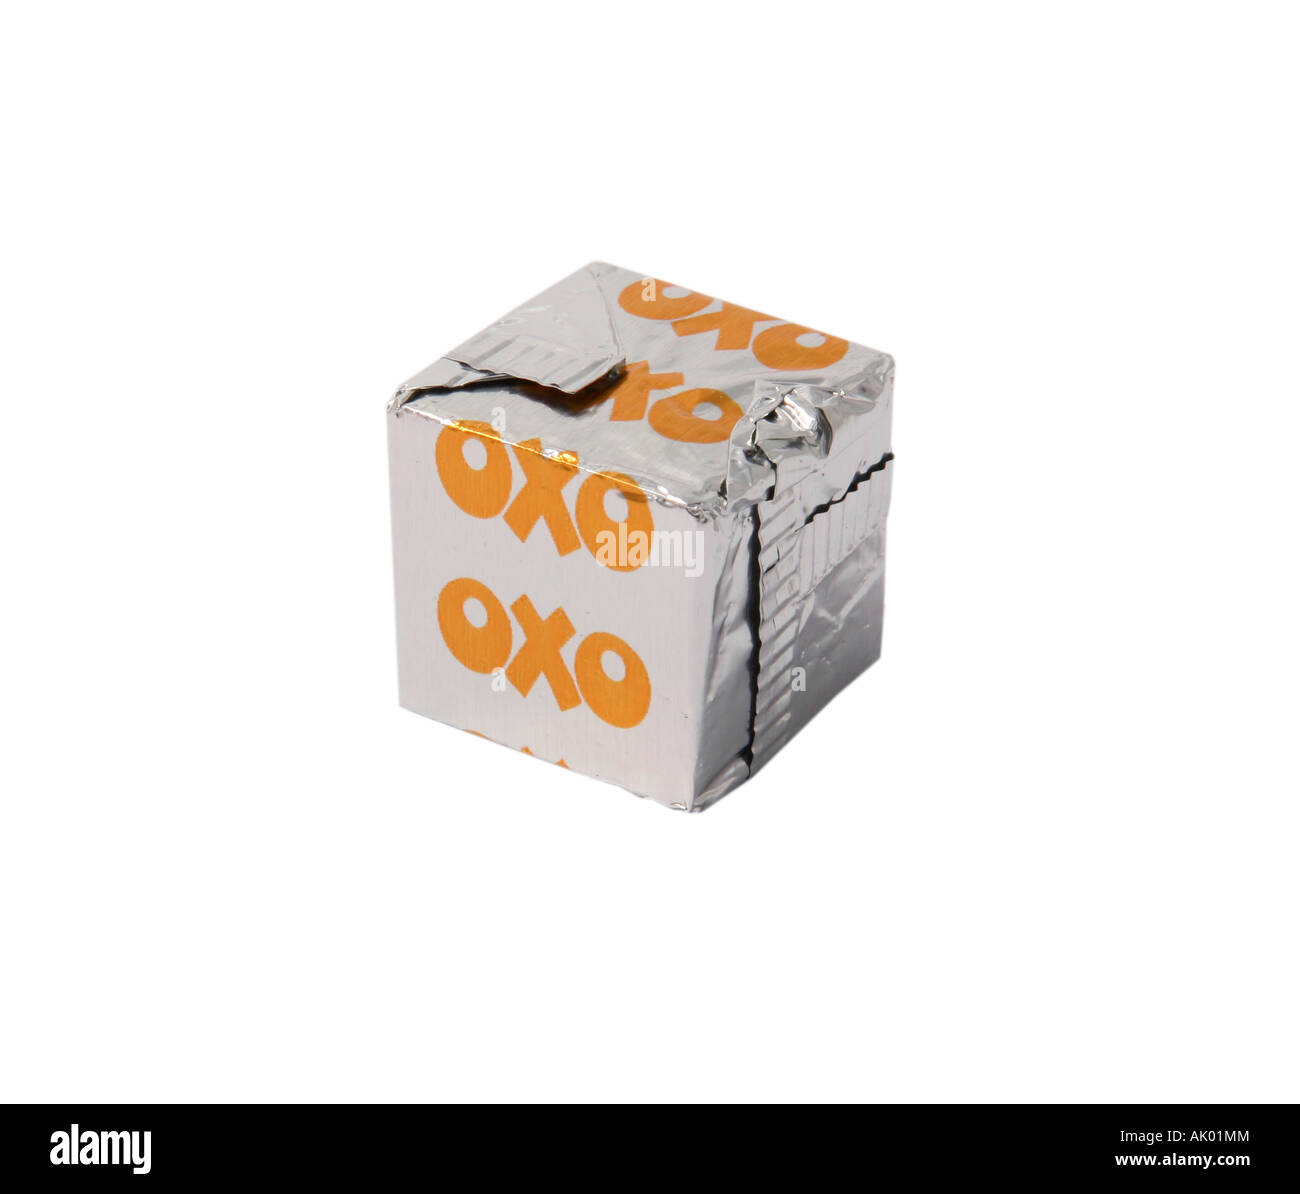 Caldo de pollo oxo cube cut-out Fotografía de stock - Alamy